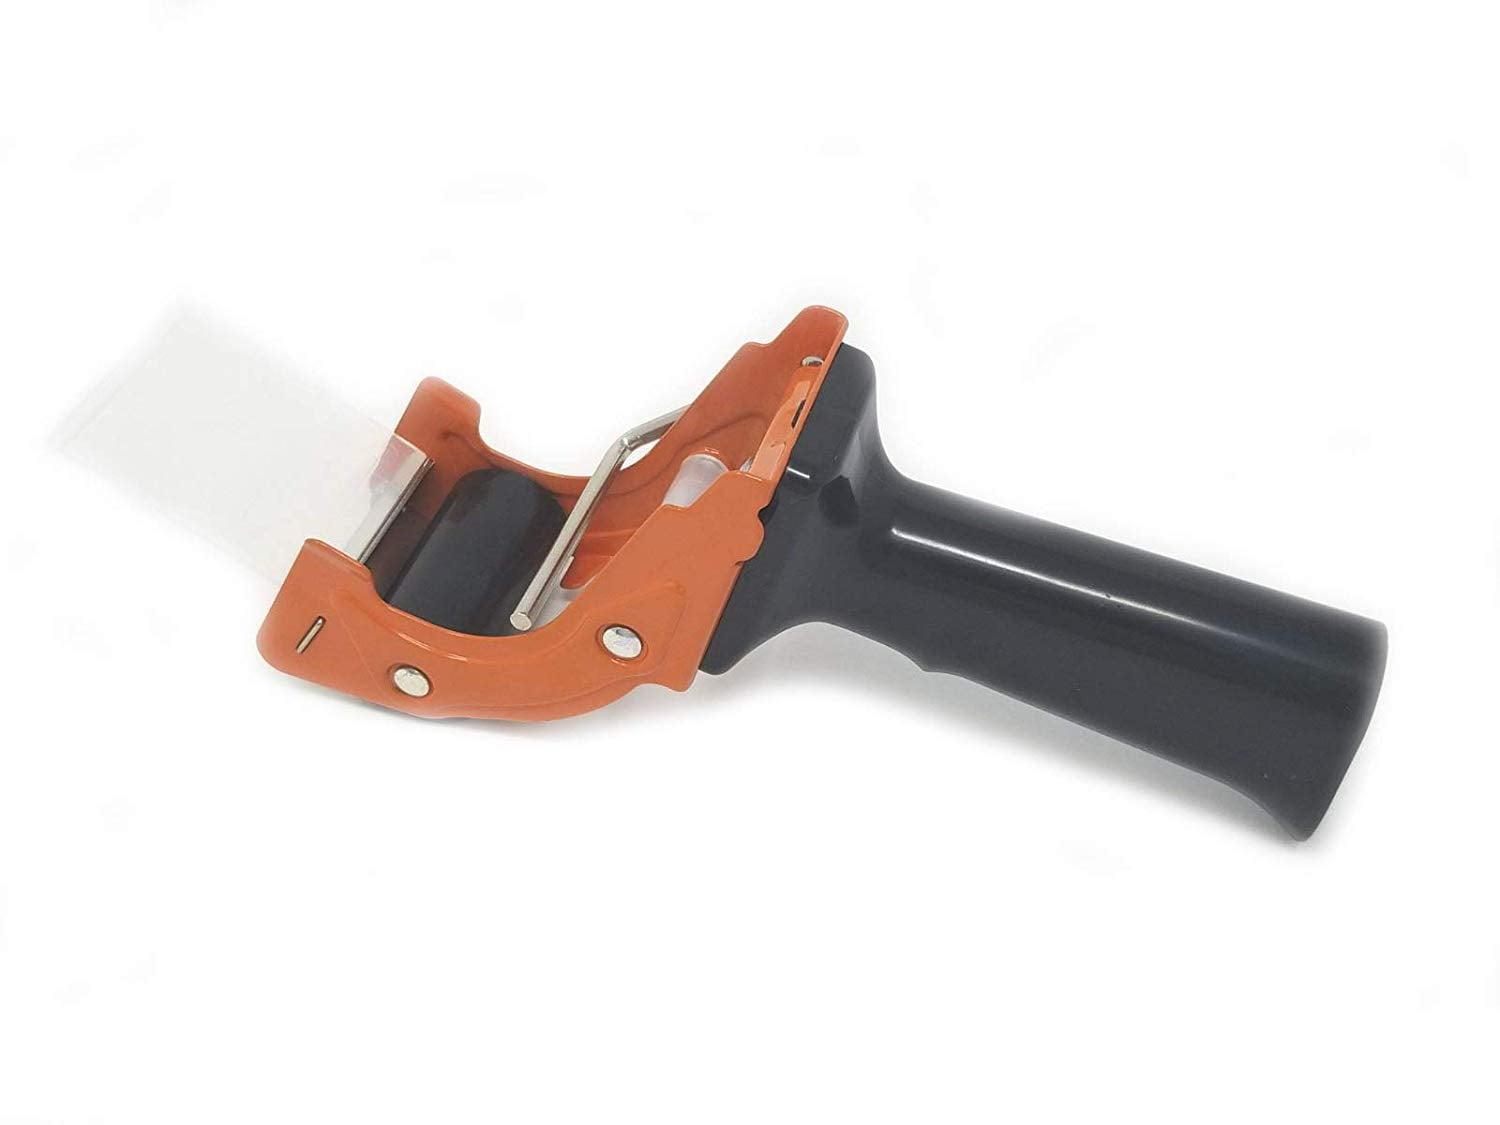 ProSun Metal Handheld 2 inch Tape Gun Dispenser Packing Packaging Sealing Cutter Orange